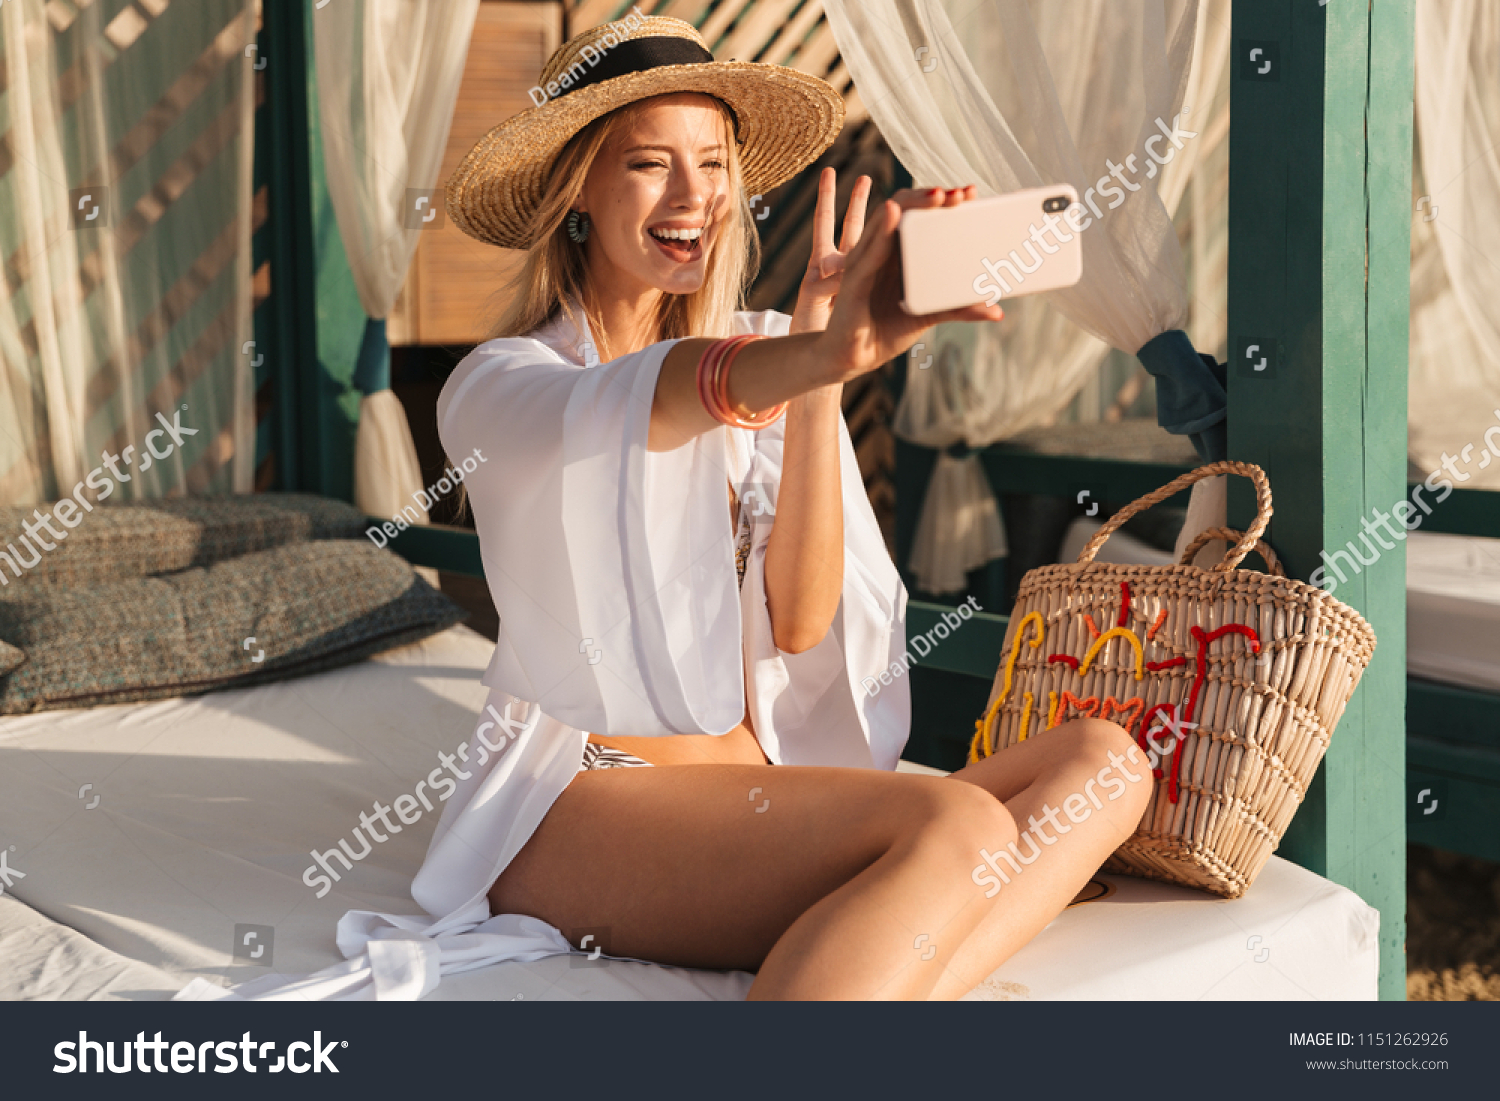 Descargar imágenes de stock del verano gratuitas - Shutterstock